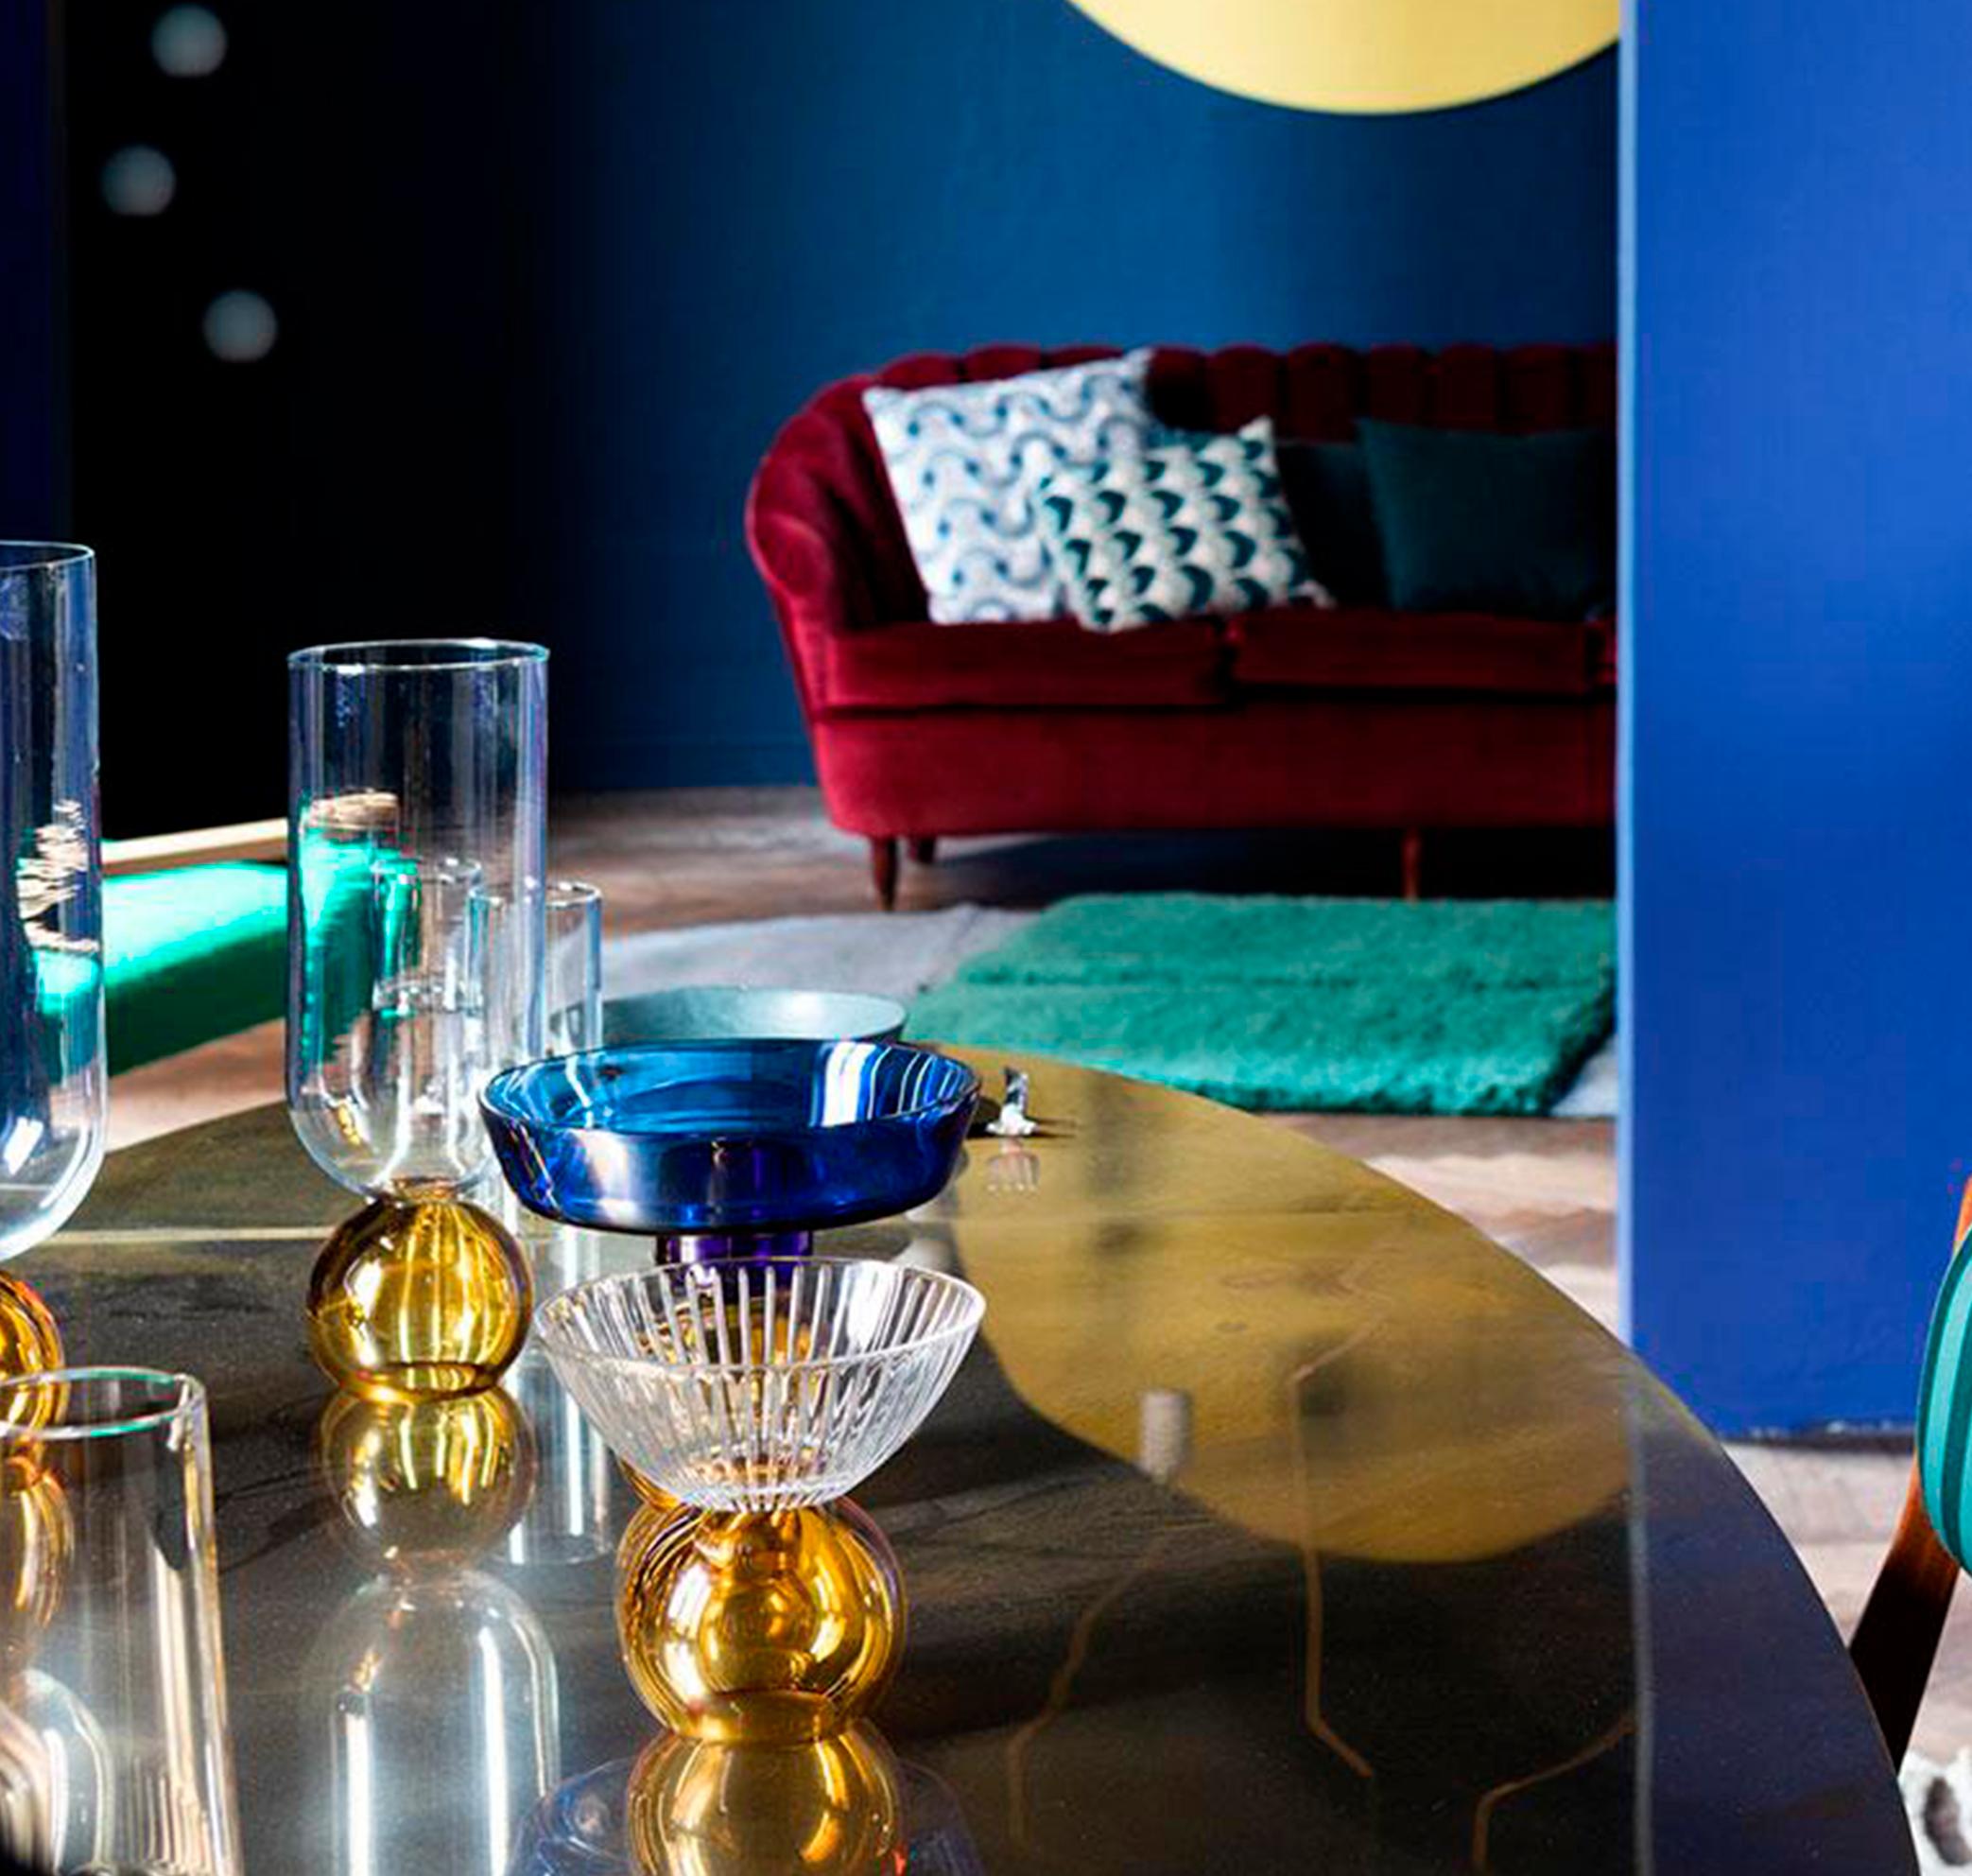 Le vase azul est une extension du projet wonder crystals de Natalia Criado. Cette série d'objets en verre soufflé témoigne d'un savoir-faire intemporel. Méticuleusement fabriquée à la main par des artisans qualifiés en Toscane, cette pièce est un